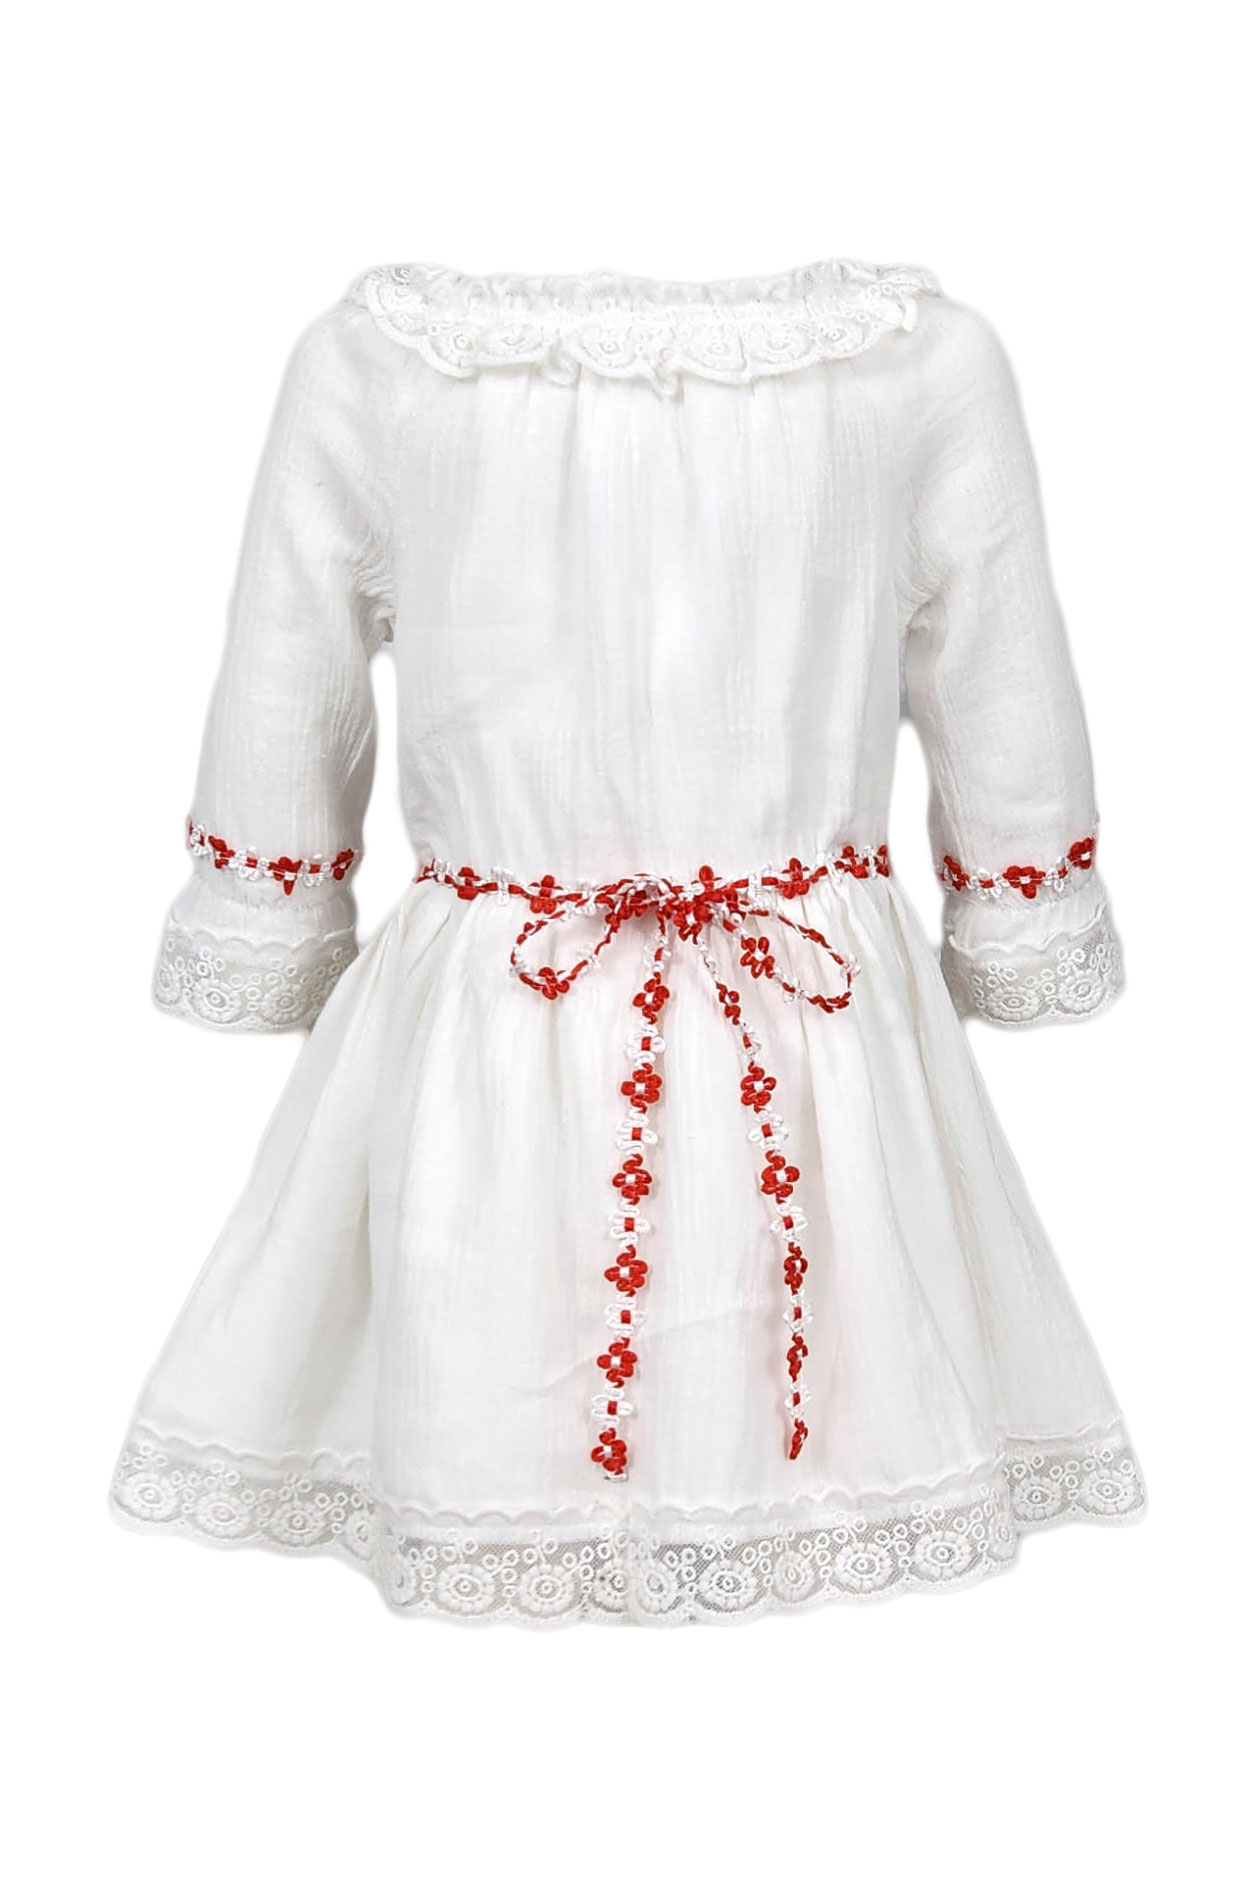 Rochie traditionala, model Ilinca, culoare alb-rosie